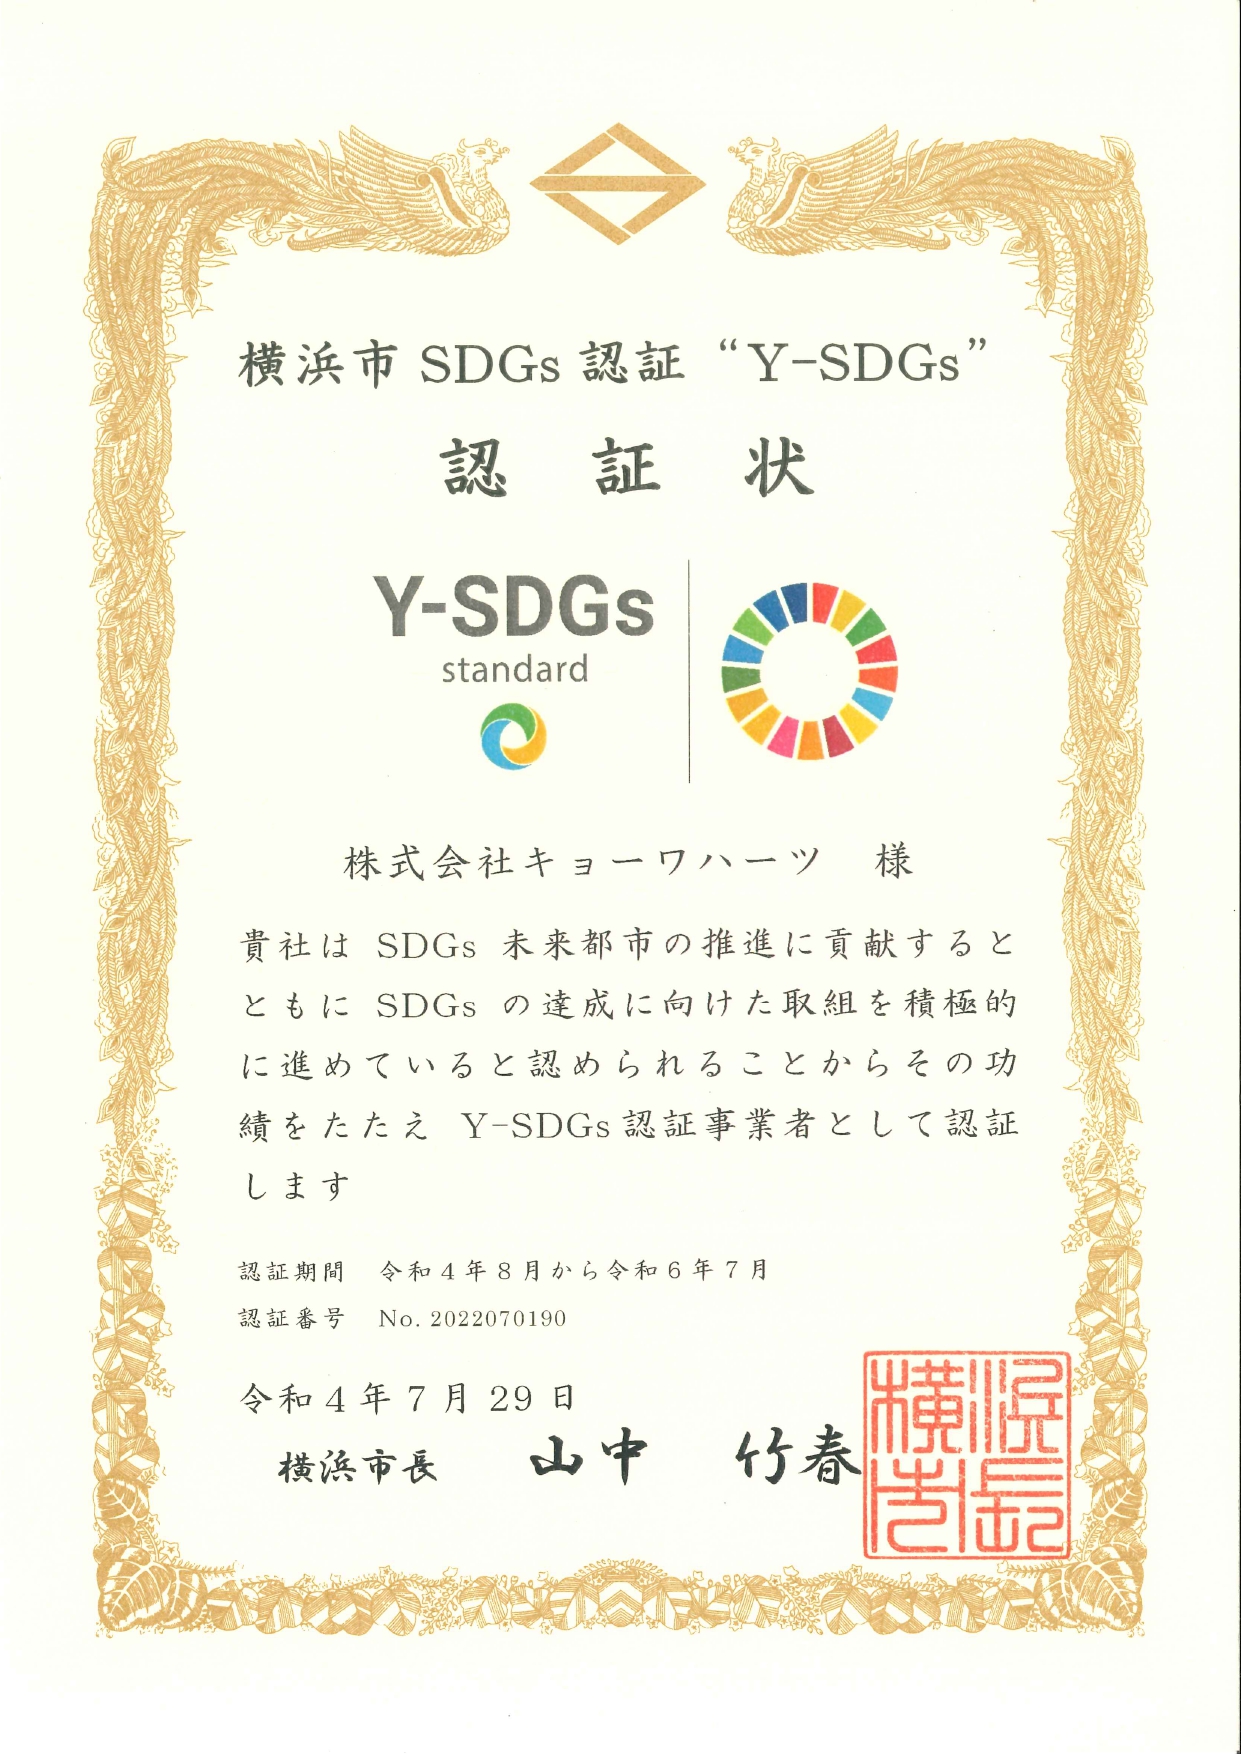 横浜市SDGs認証”Y-SDGs” を取得しました。